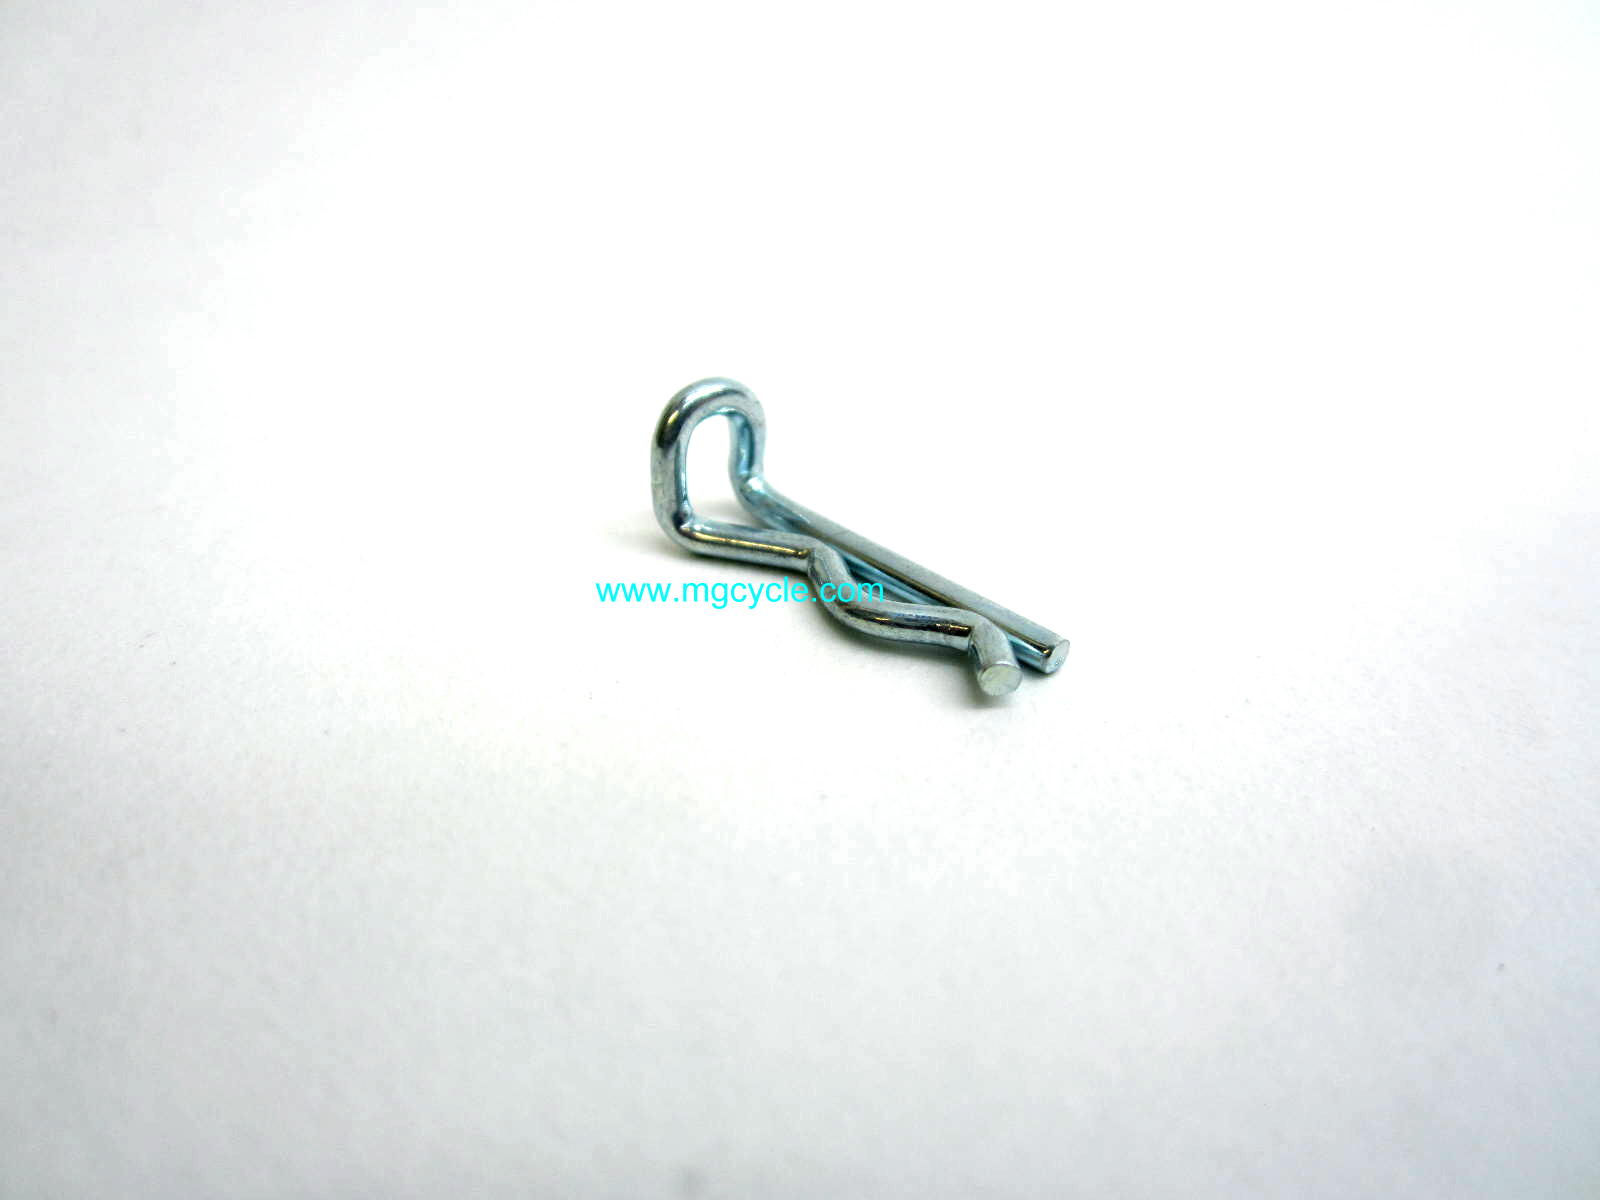 Brembo style caliper pin clip for brake pad retainer - Click Image to Close